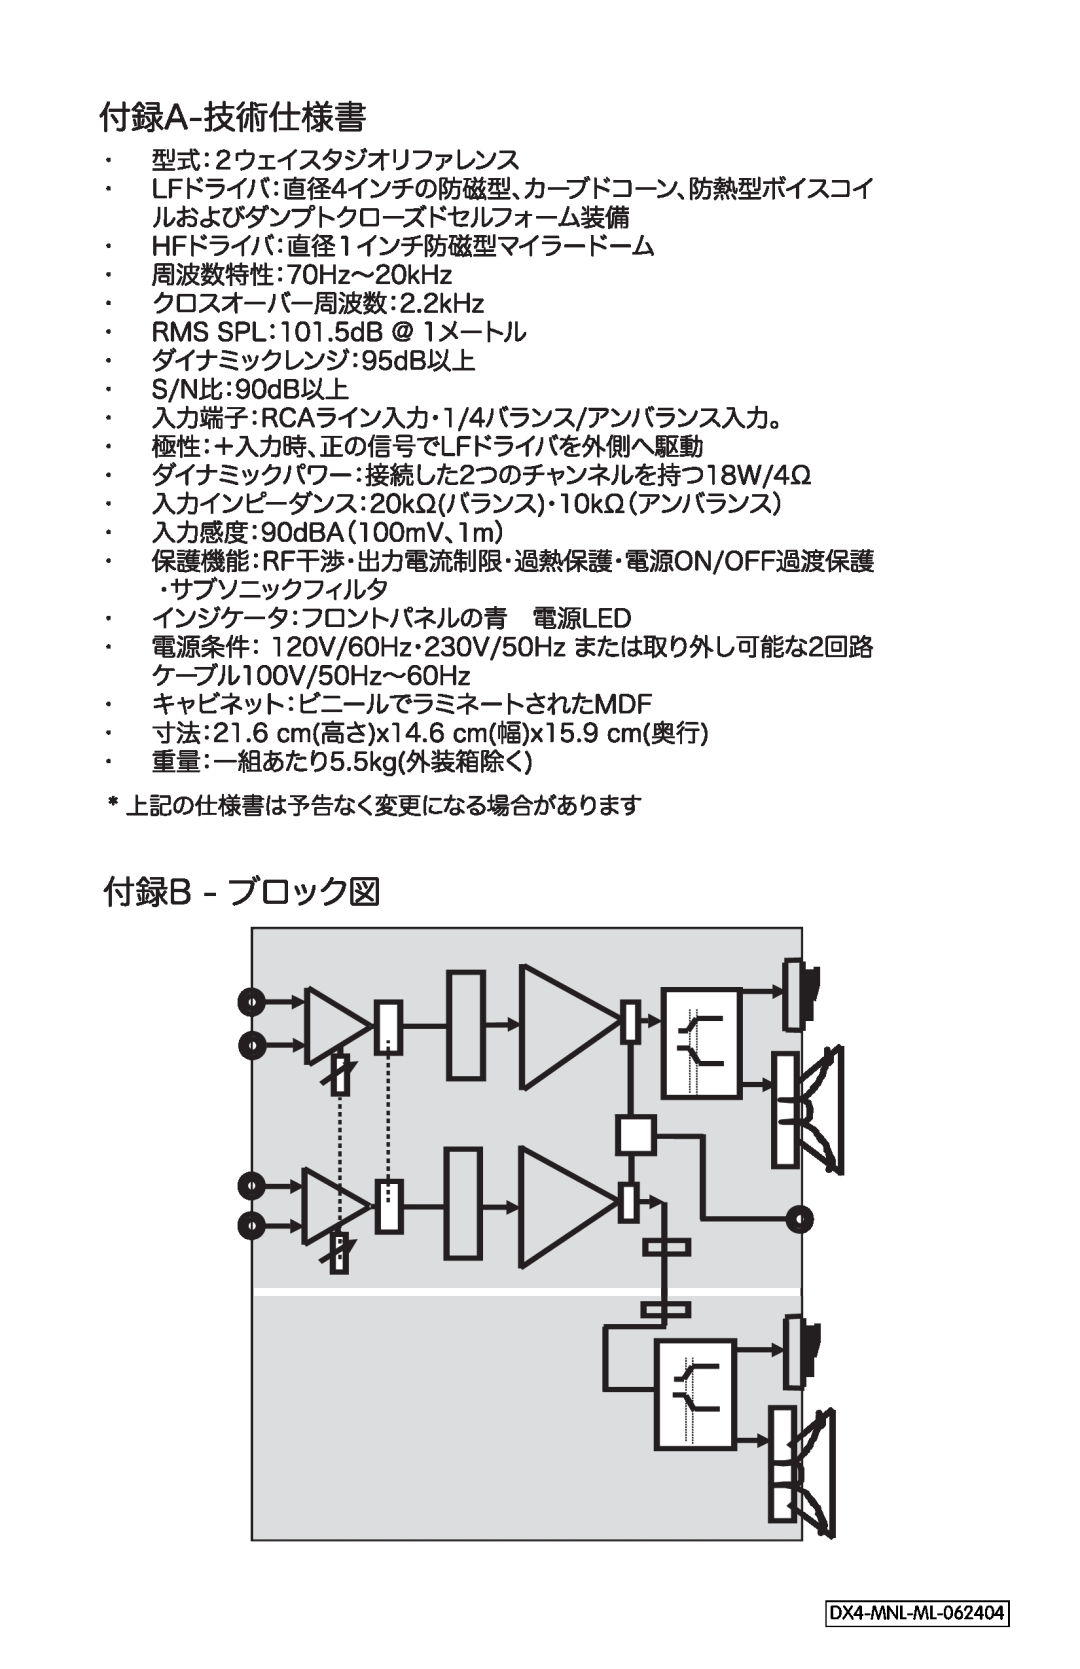 M-Audio manual Left Speaker, Right Speaker, DX4-MNL-ML-062404 